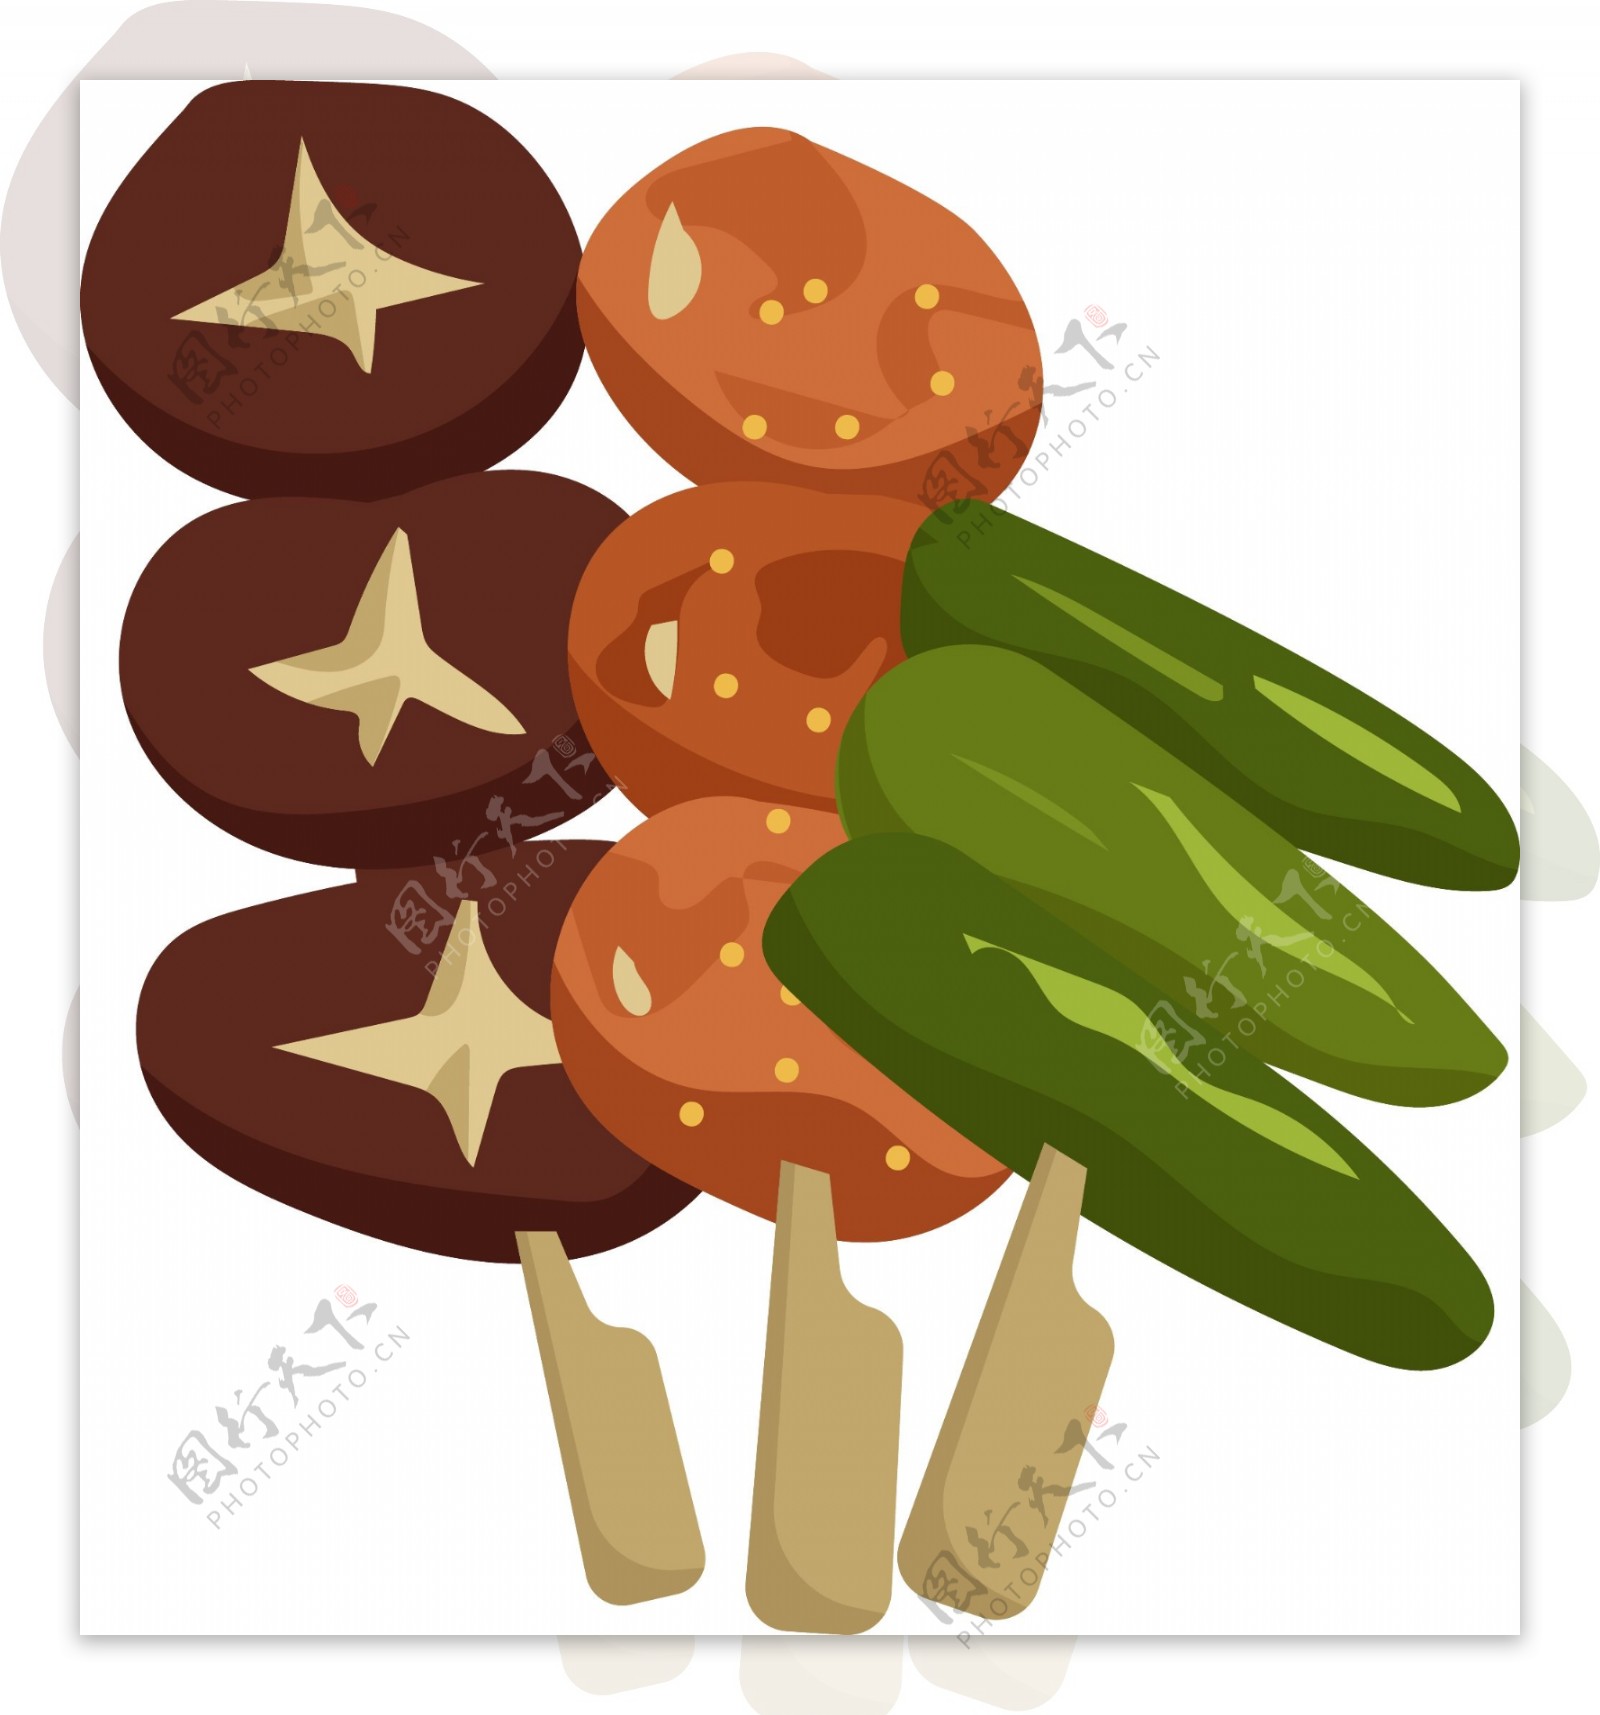 烧烤蘑菇装饰插画